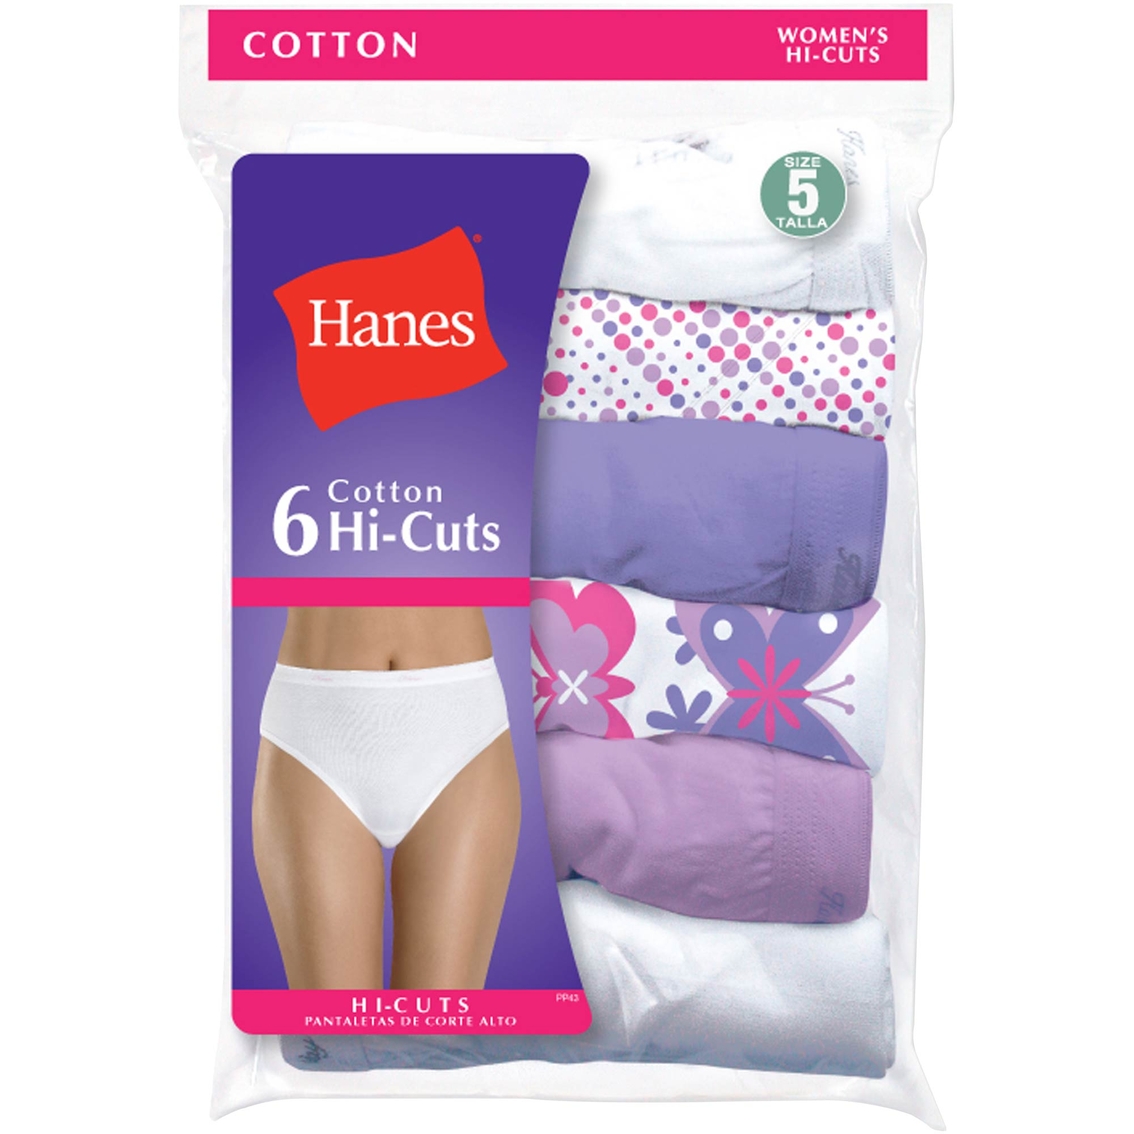 Hanes Cotton High Cut Panties 6 Pk., Panties